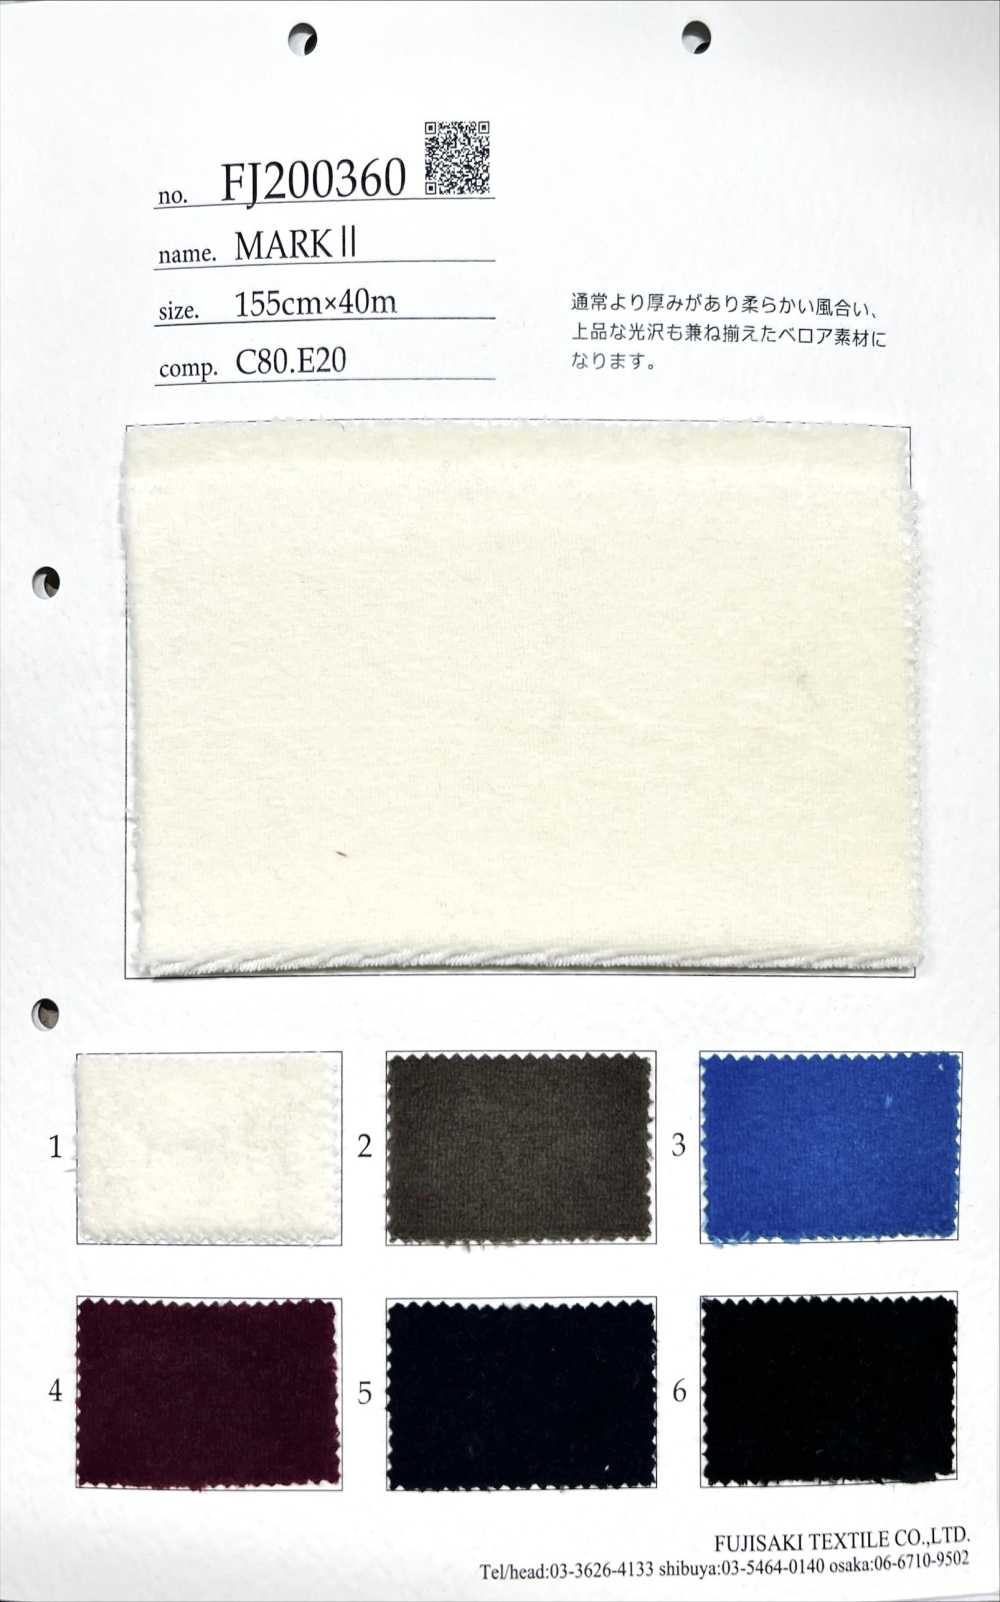 FJ200360 MARKUSⅡ[Textilgewebe] Fujisaki Textile